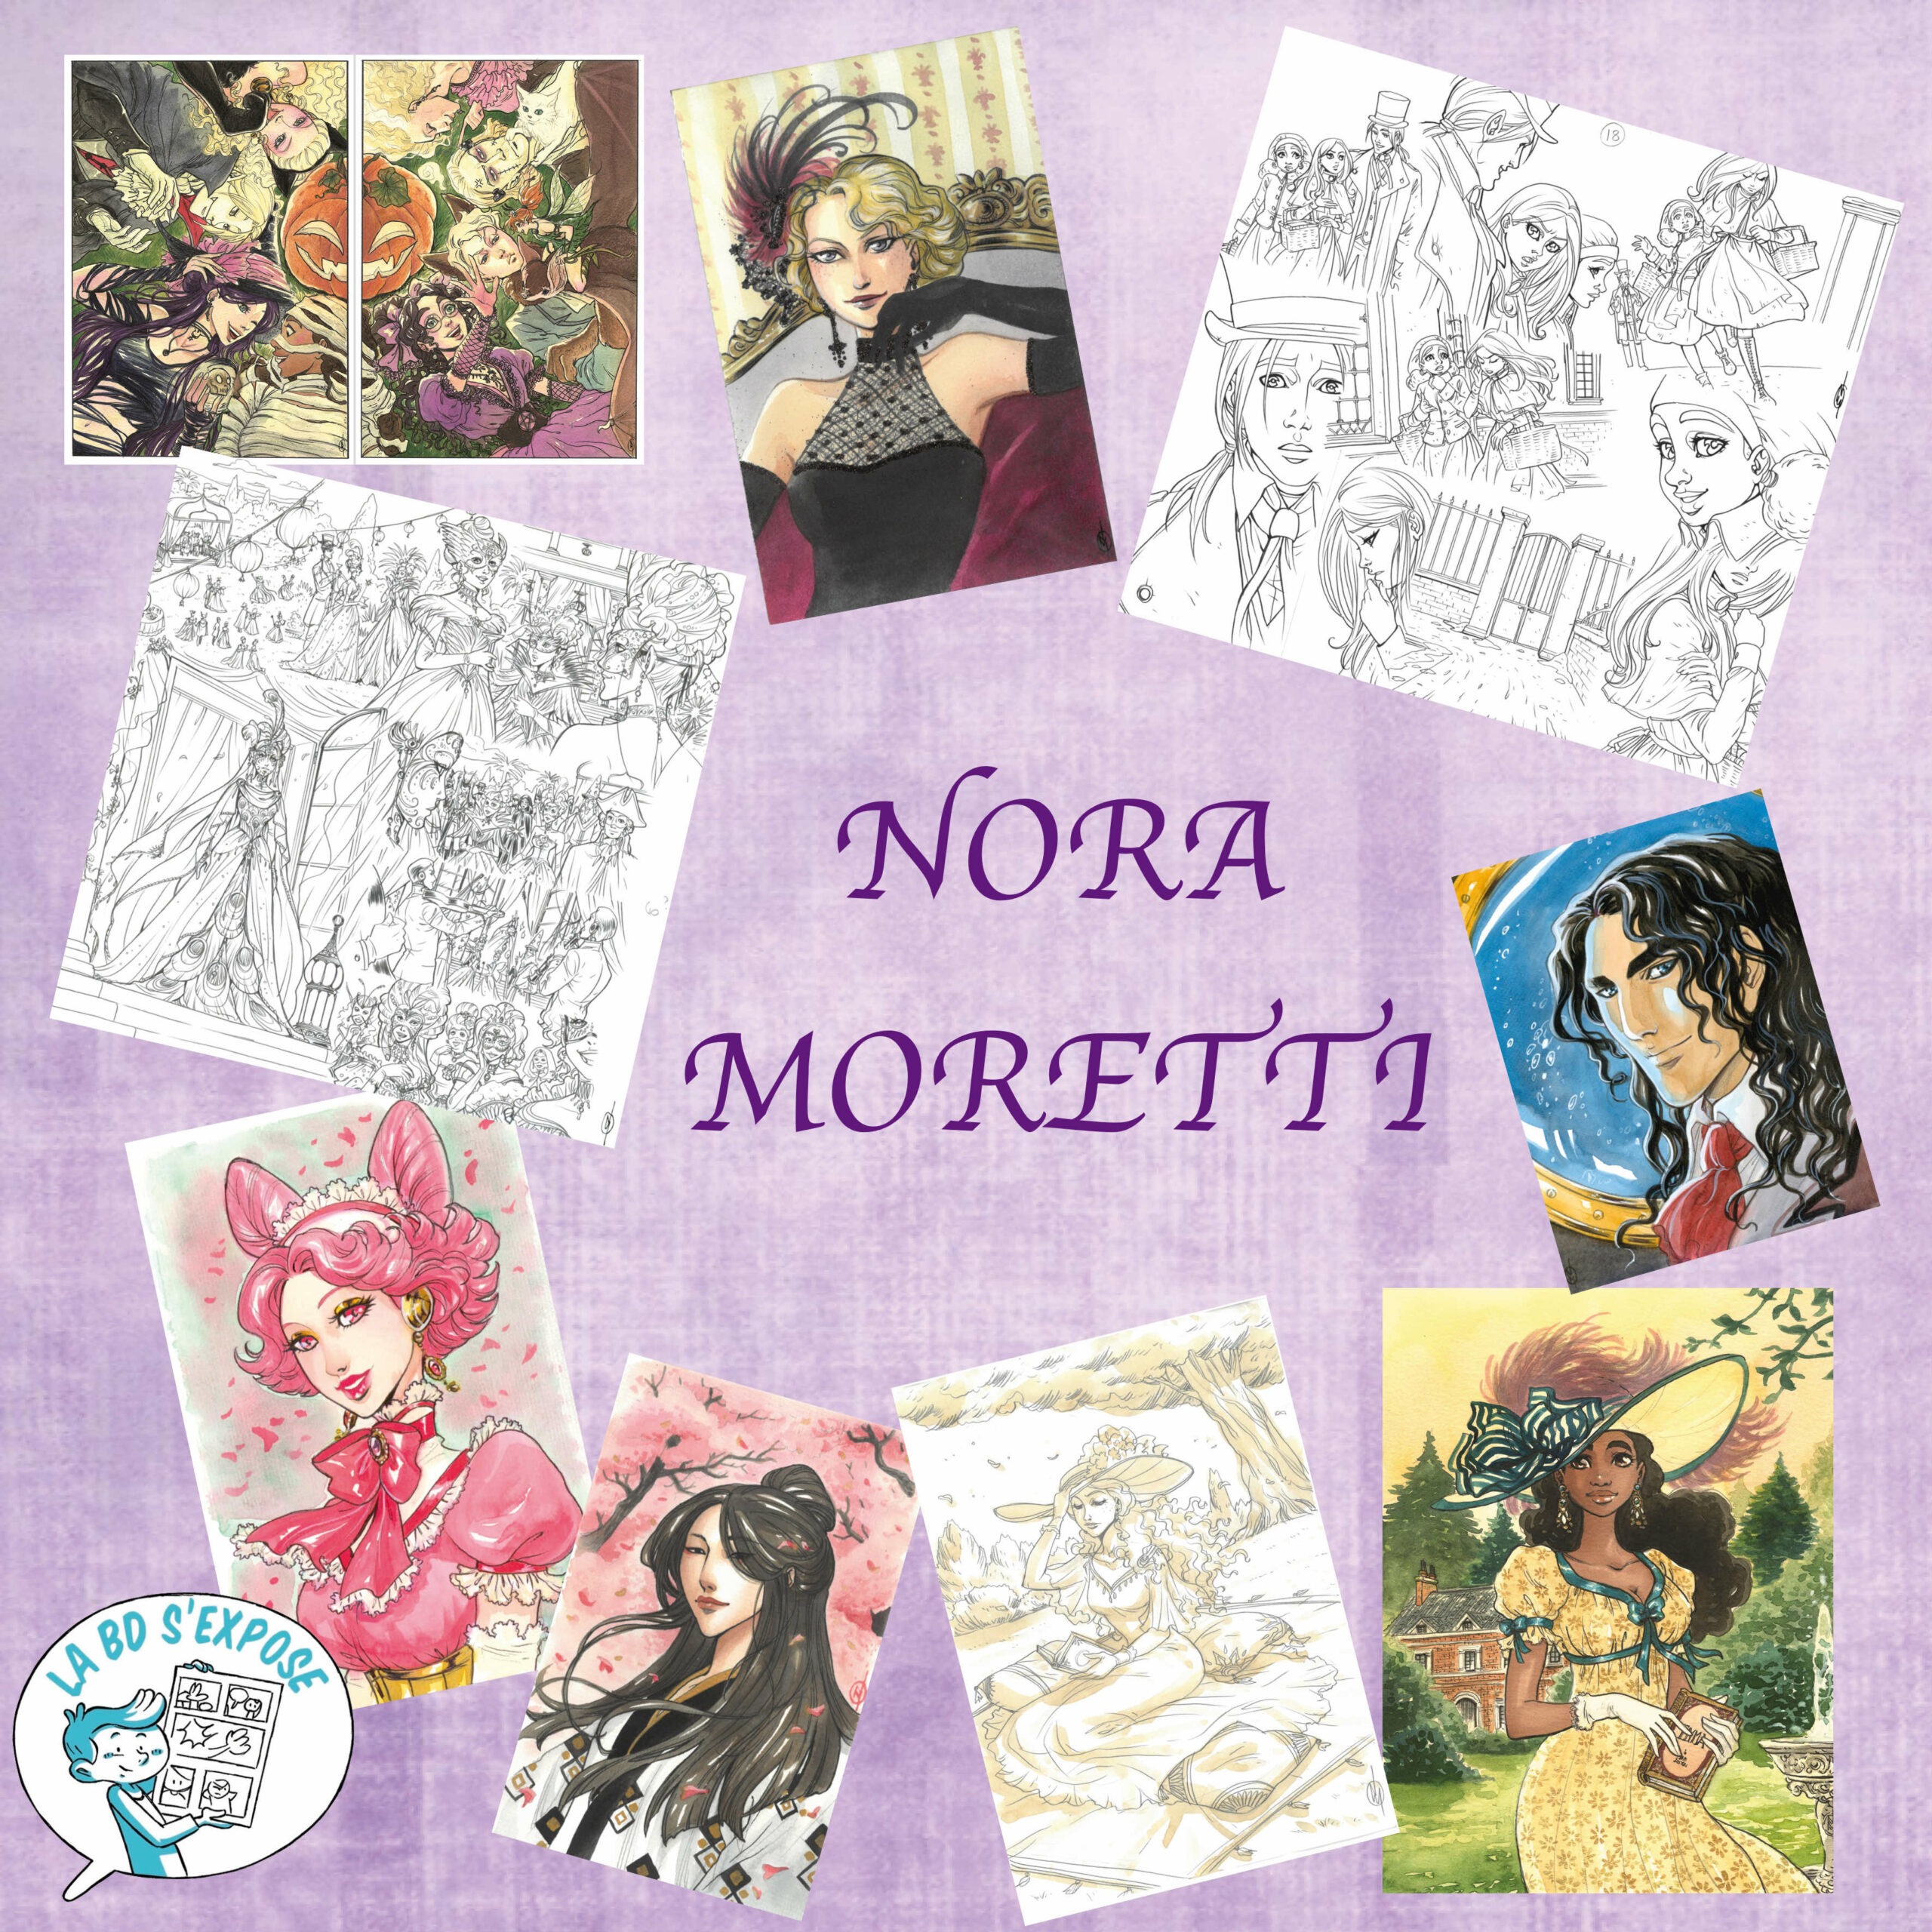 Pub Nora Moretti La BD s'expose